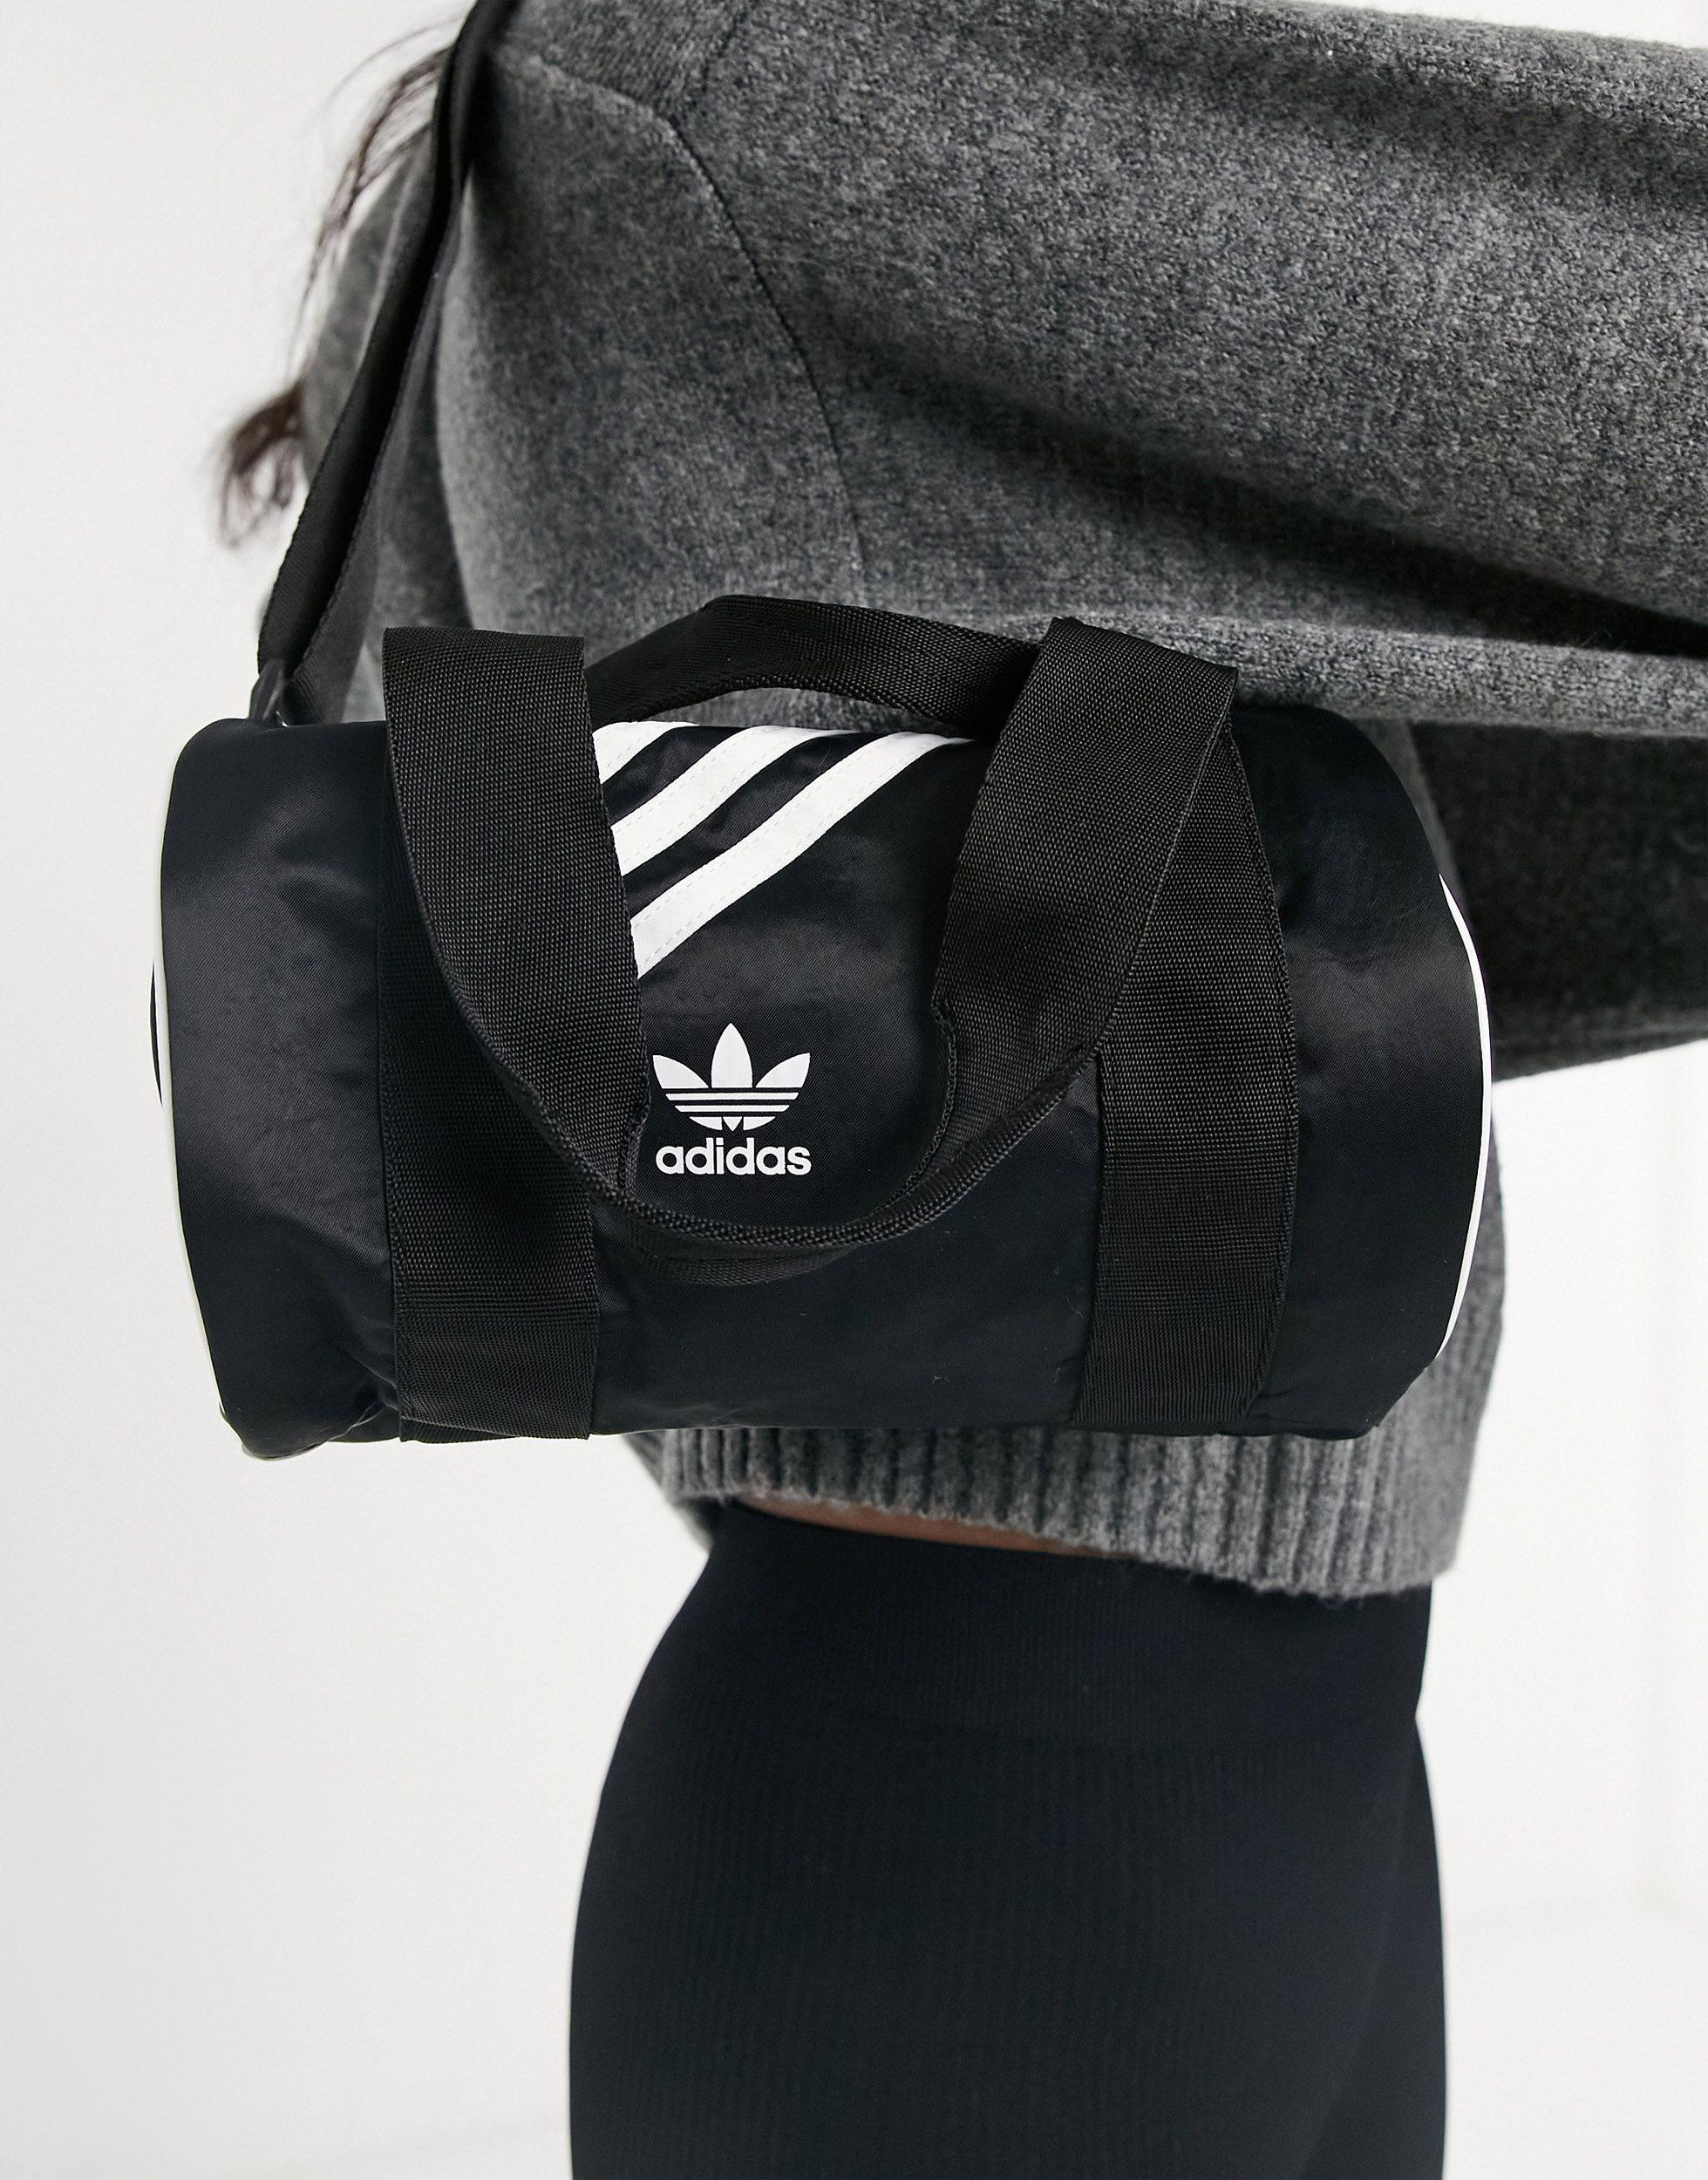 adidas Originals Mini Duffle Bag in Black | Lyst Australia